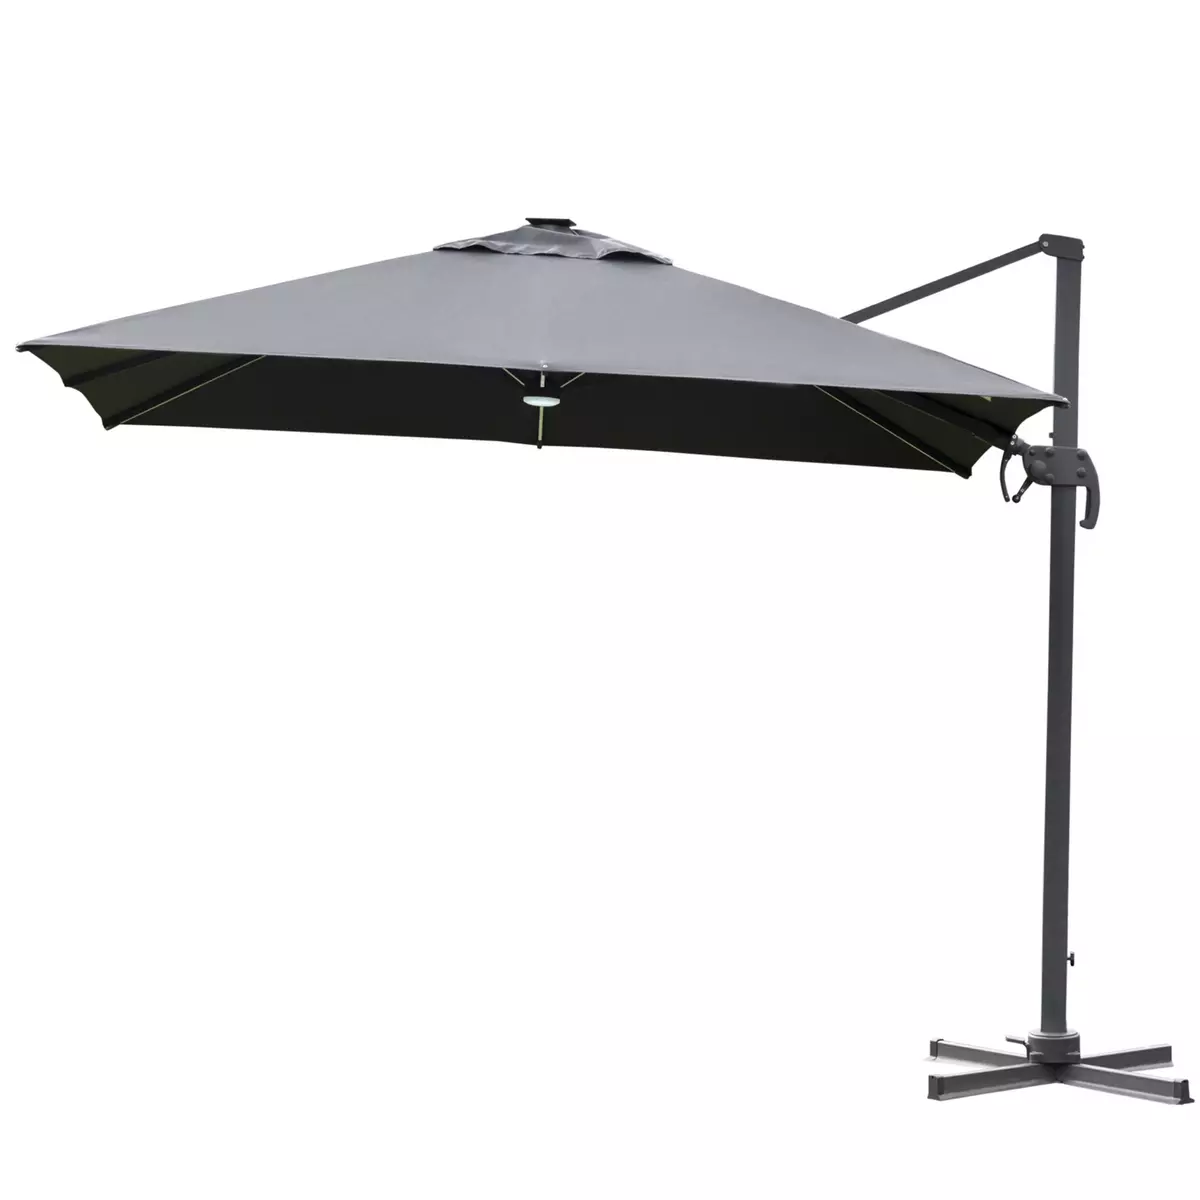 OUTSUNNY Parasol déporté carré parasol LED inclinable pivotant 360° manivelle piètement acier dim. 3L x 3l x 2,66H m gris